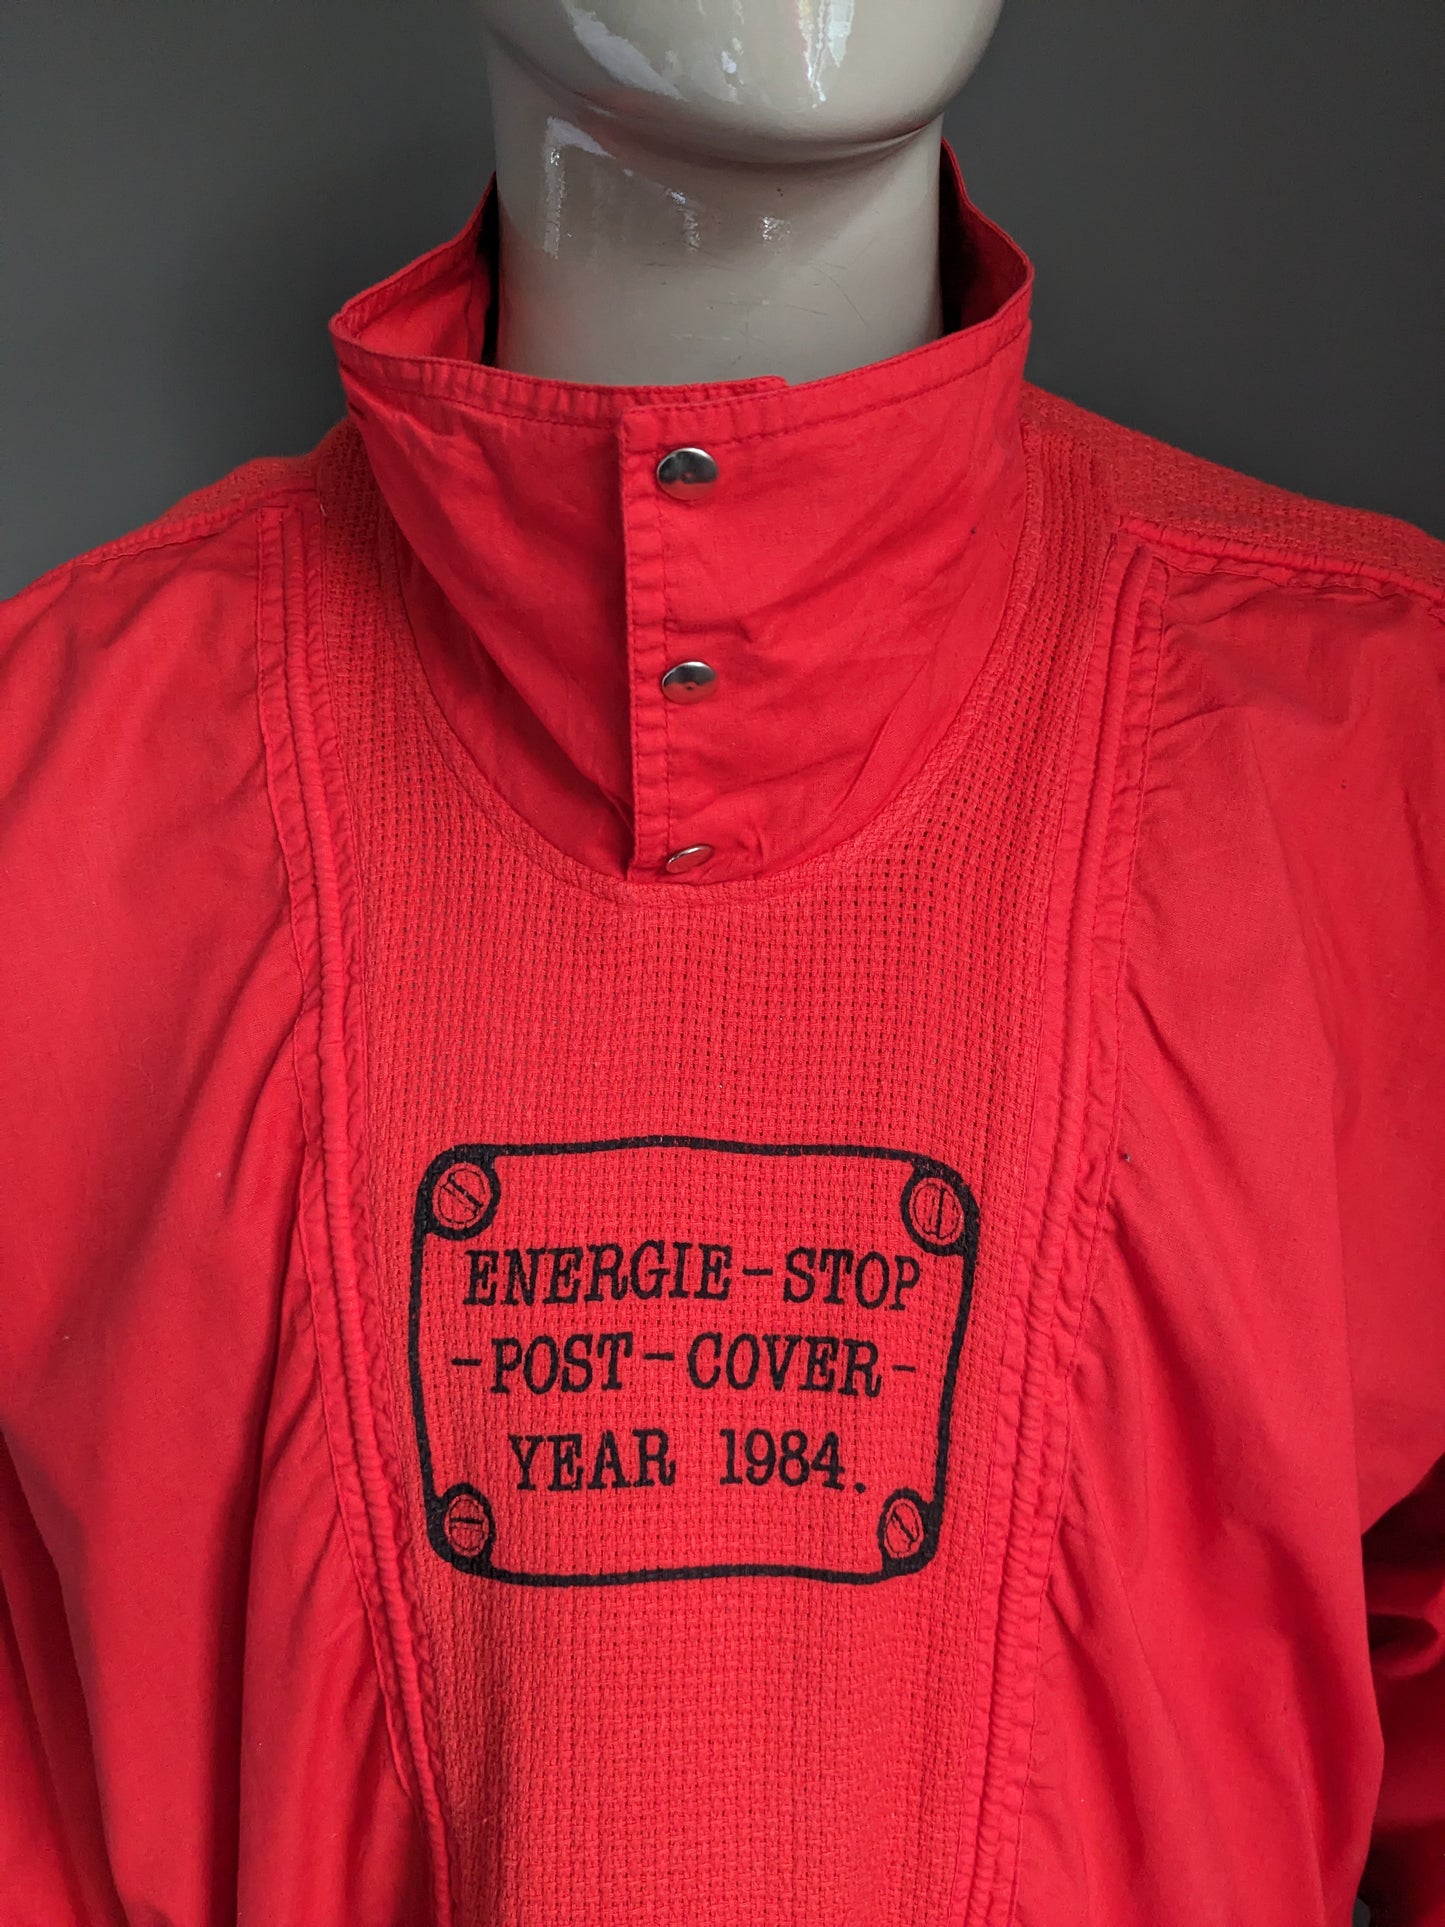 Maglione in polo vintage con fascia elastica. Rosso con stampa. Taglia L / XL.